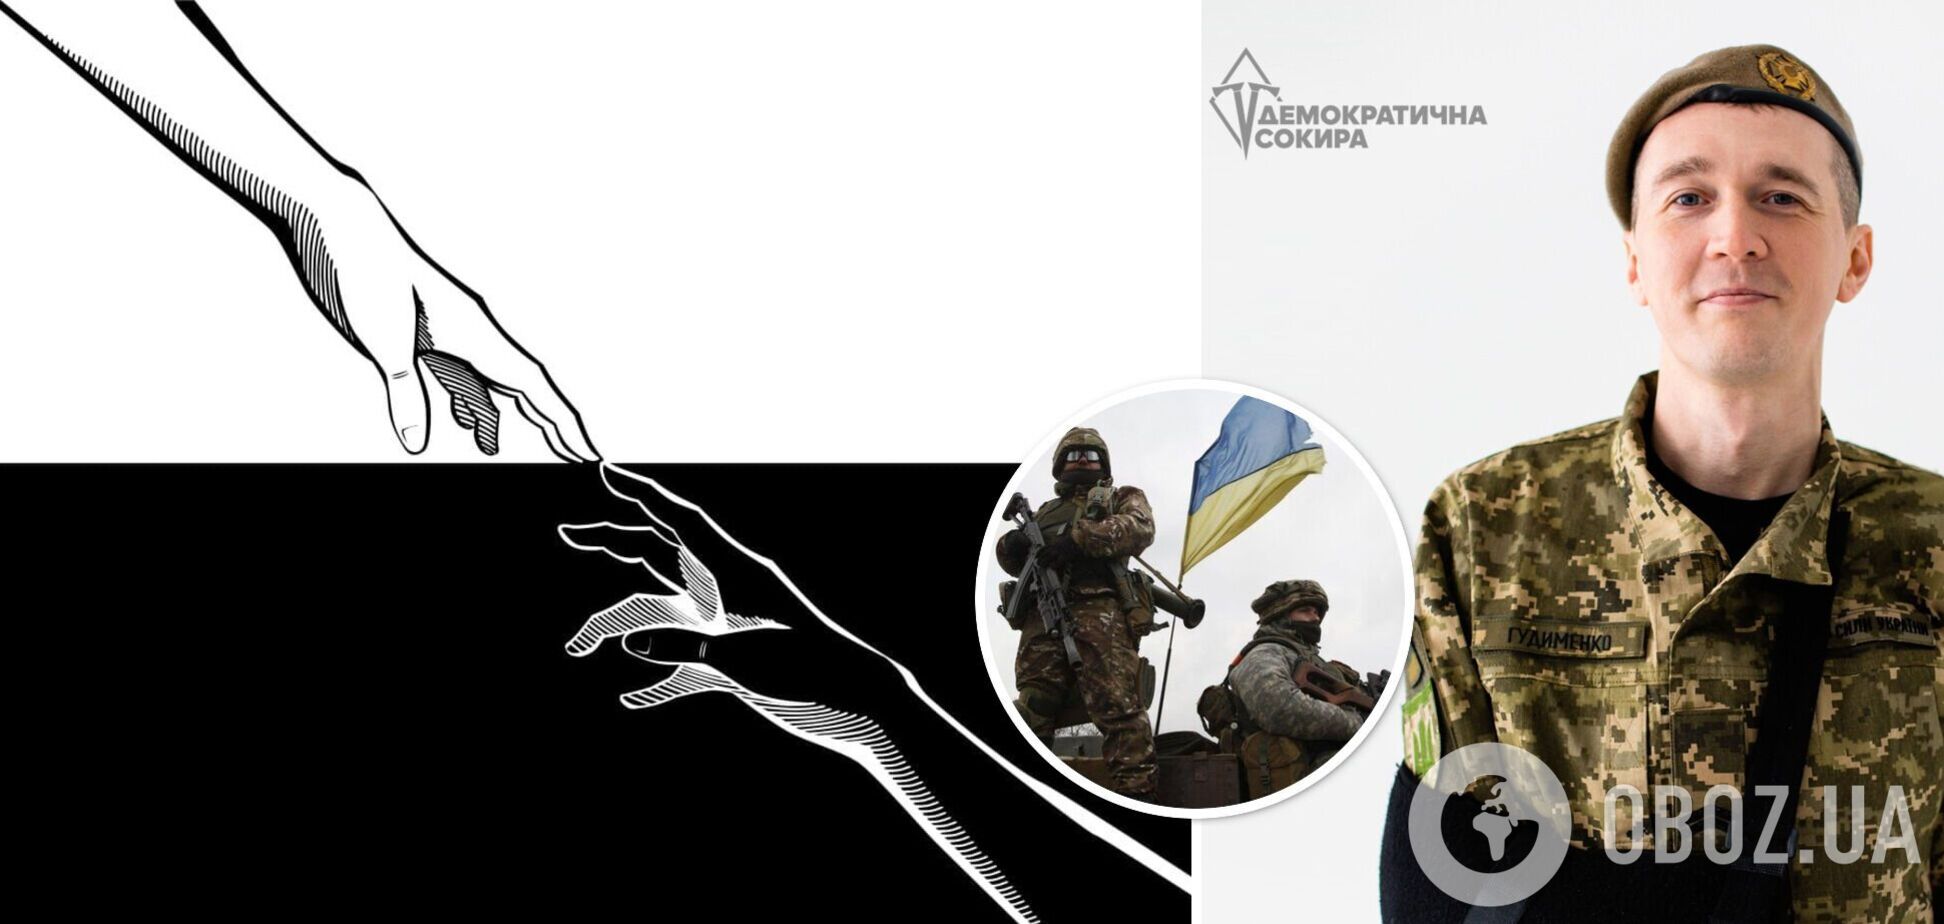 'Вы не забыты': Гудыменко предложил ВР создать флаг памяти украинских воинов